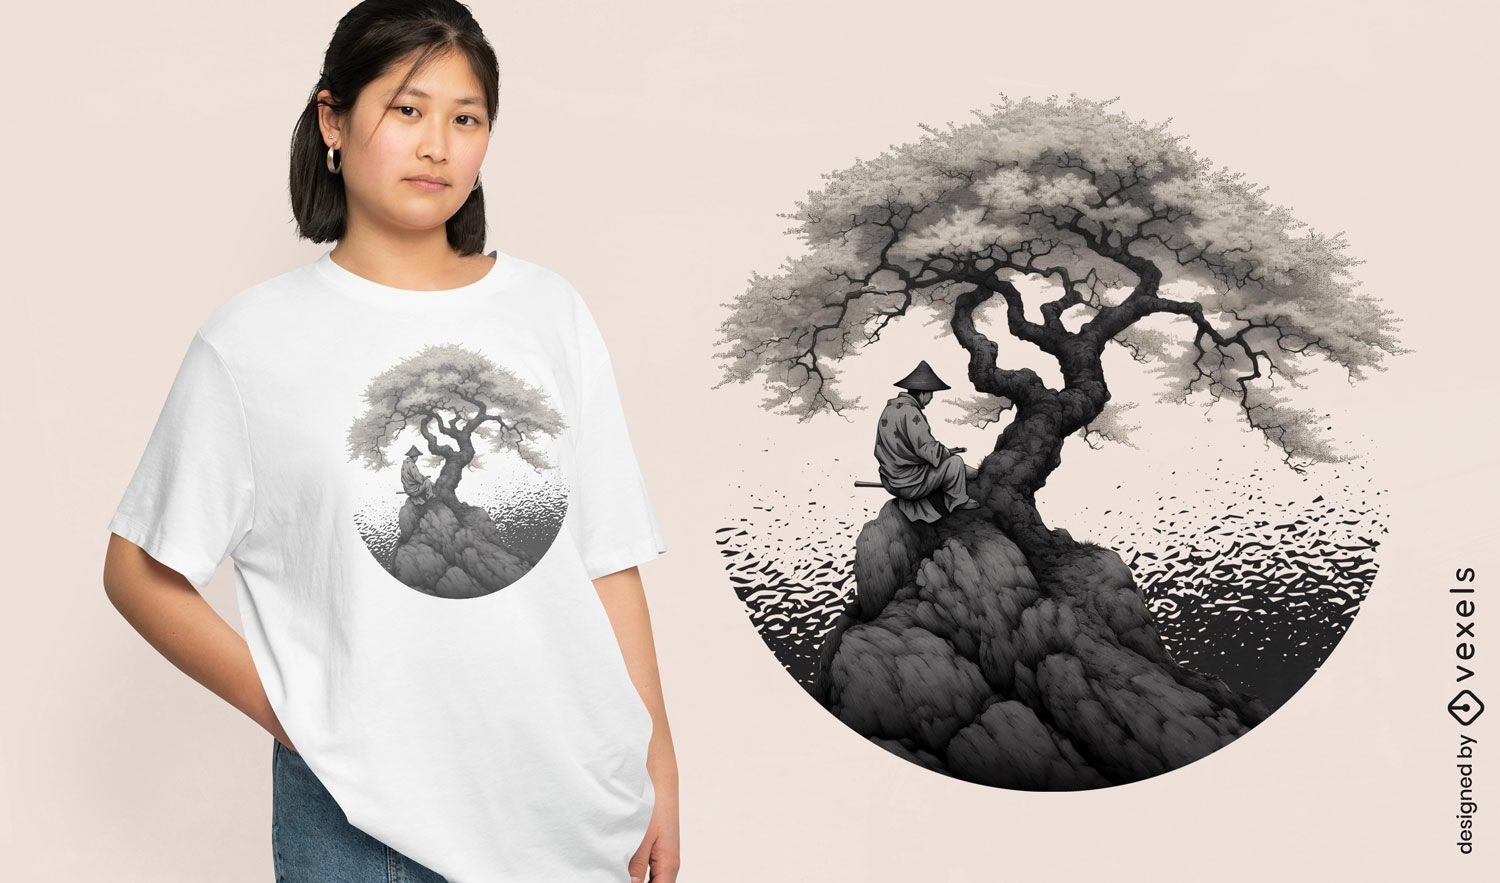 Diseño de camiseta de samurai y árbol de sakura japonés